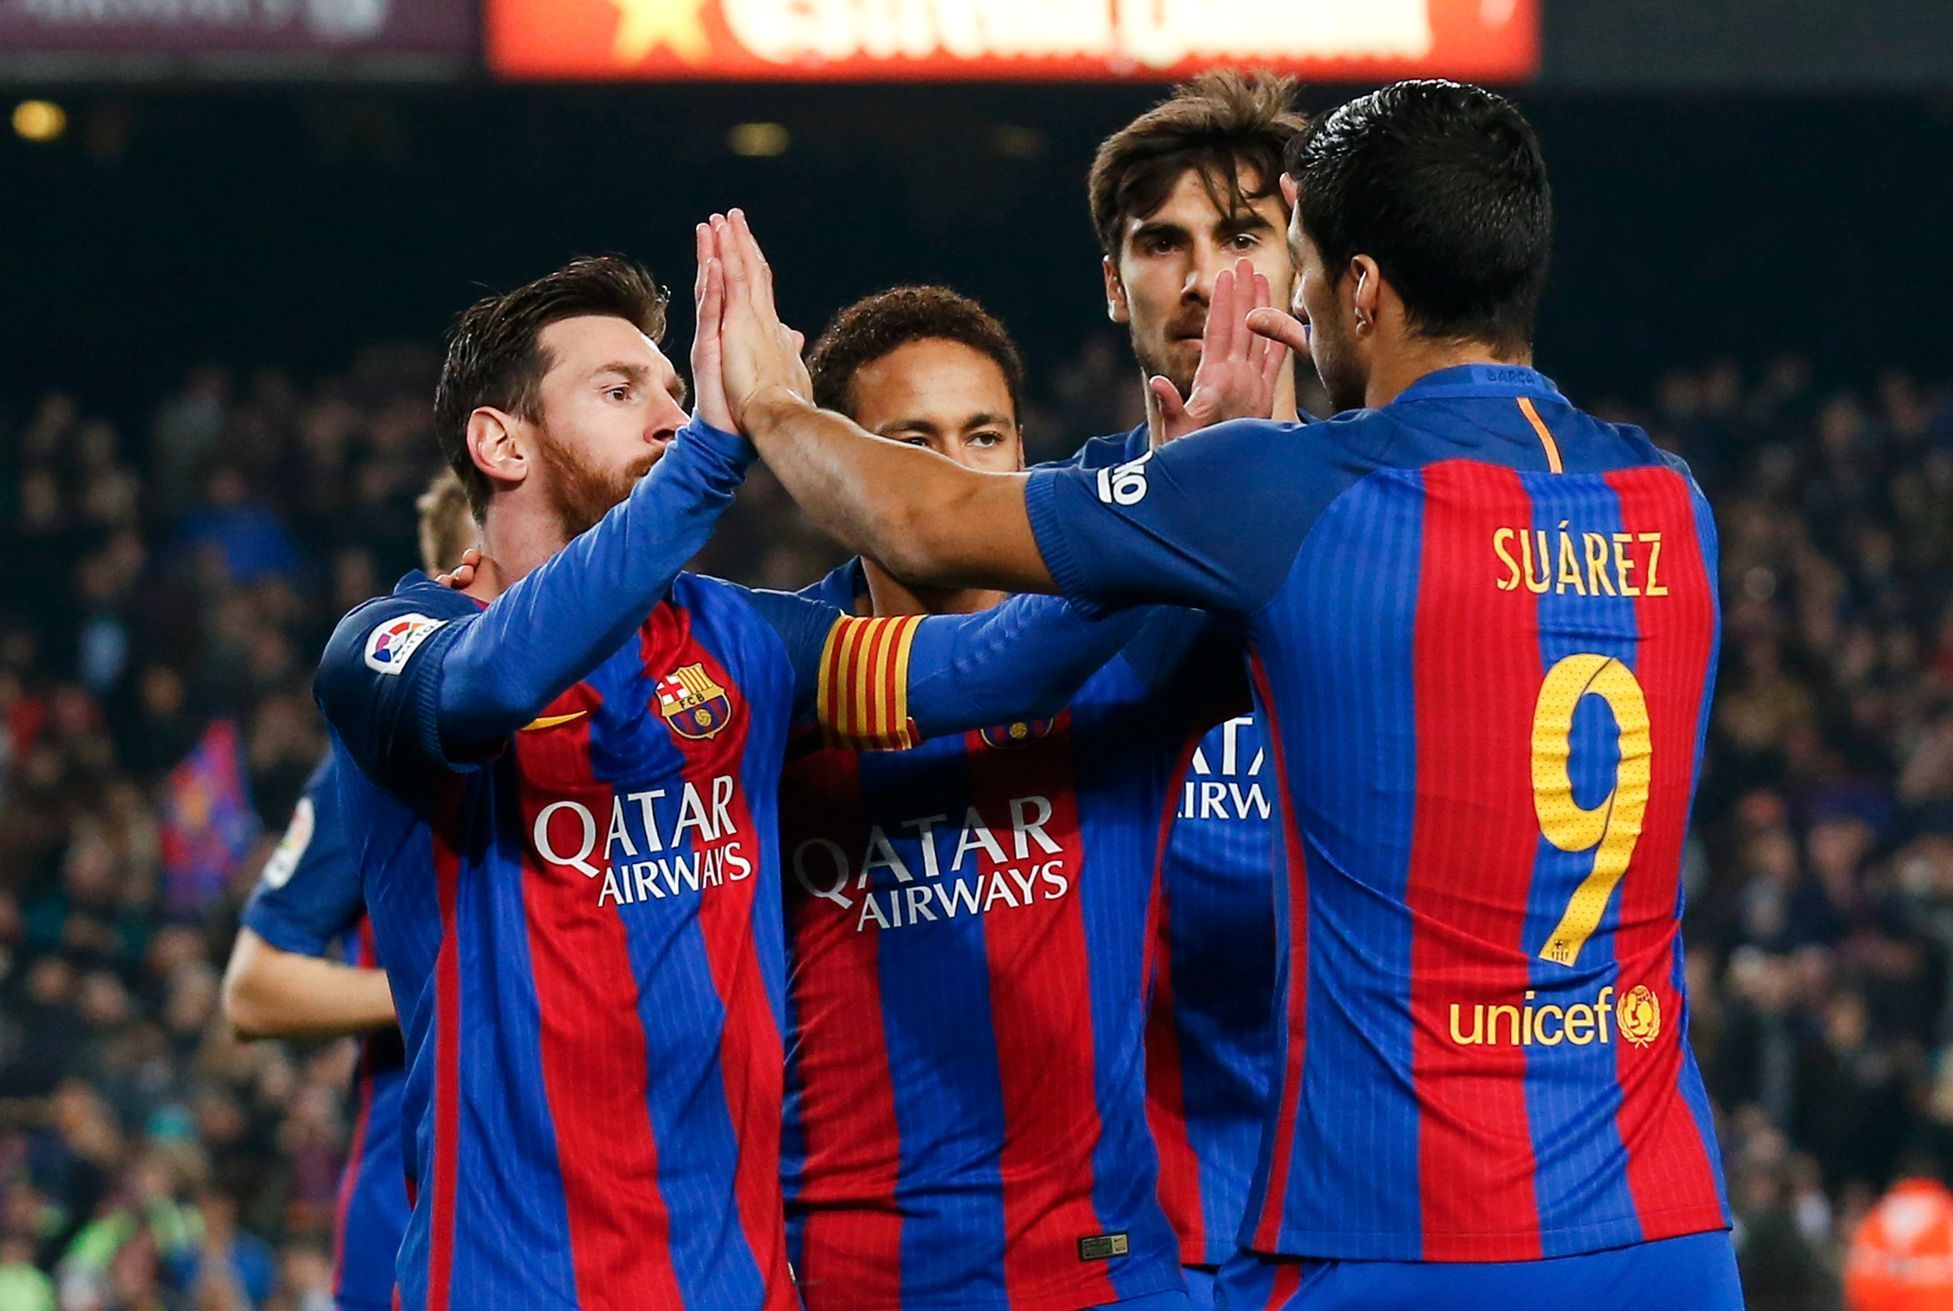 Barcelona slaví gól proti Leganes